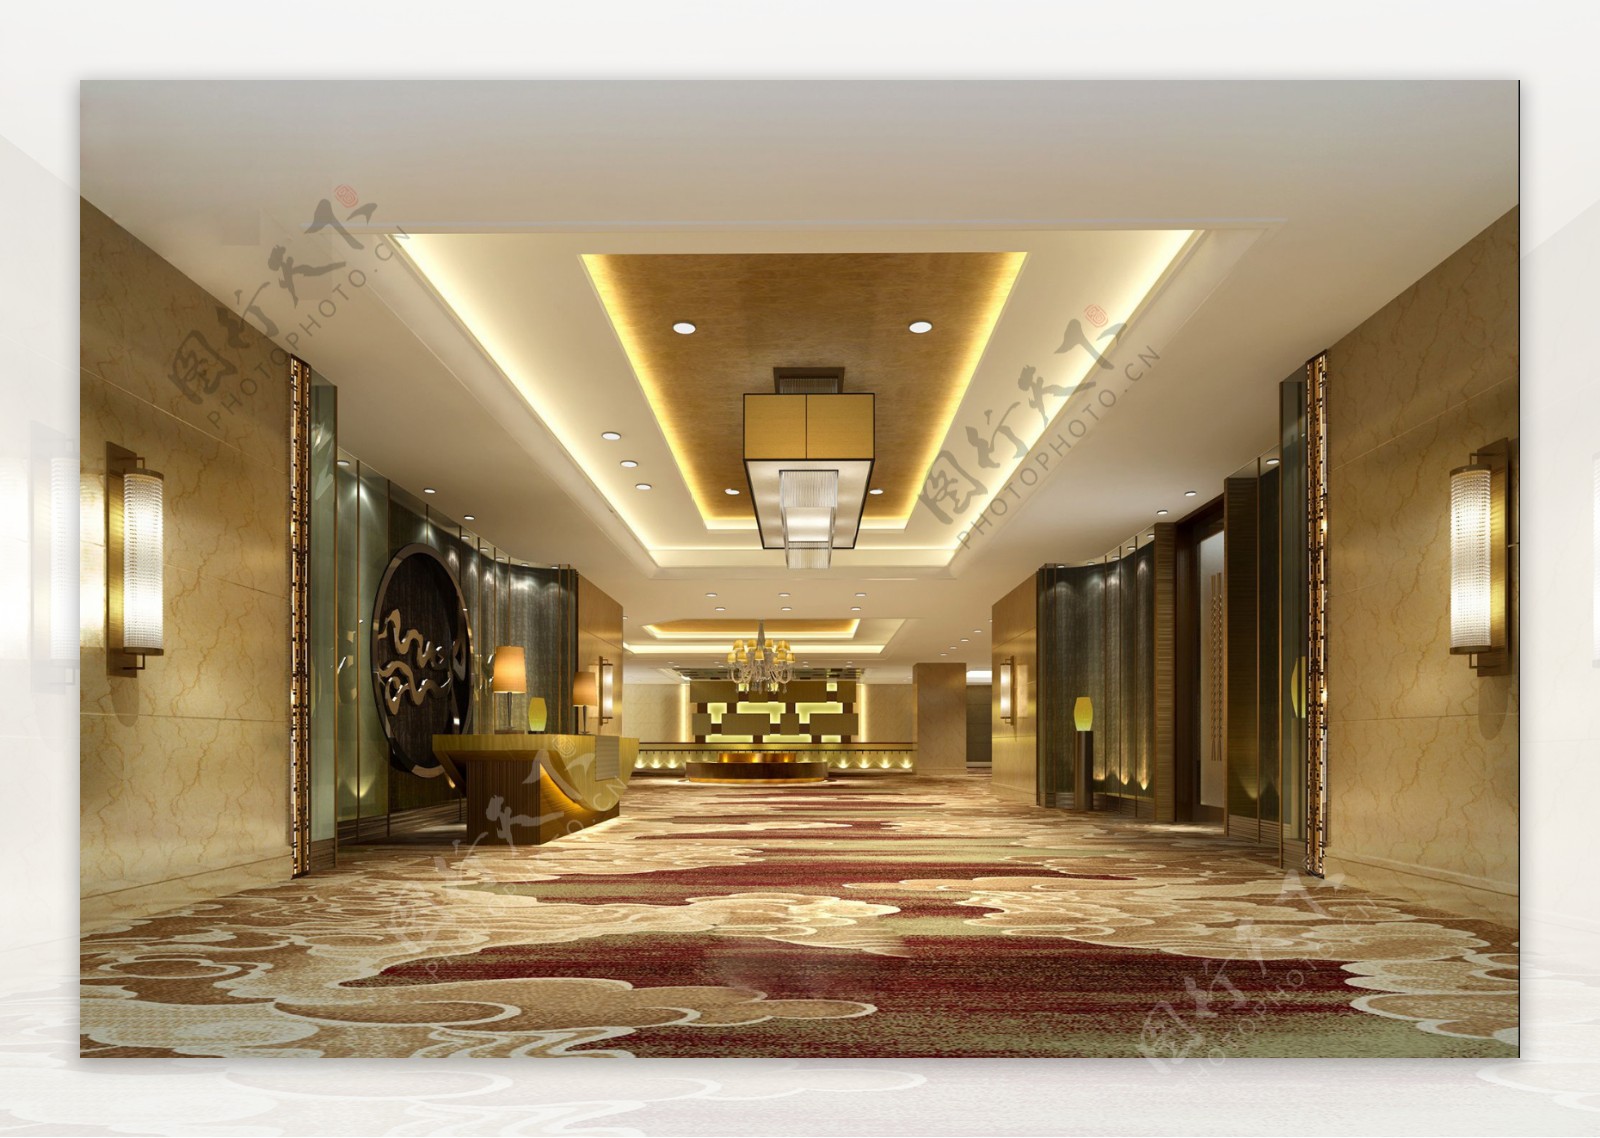 现代时尚酒红色花纹地毯酒店大厅工装效果图